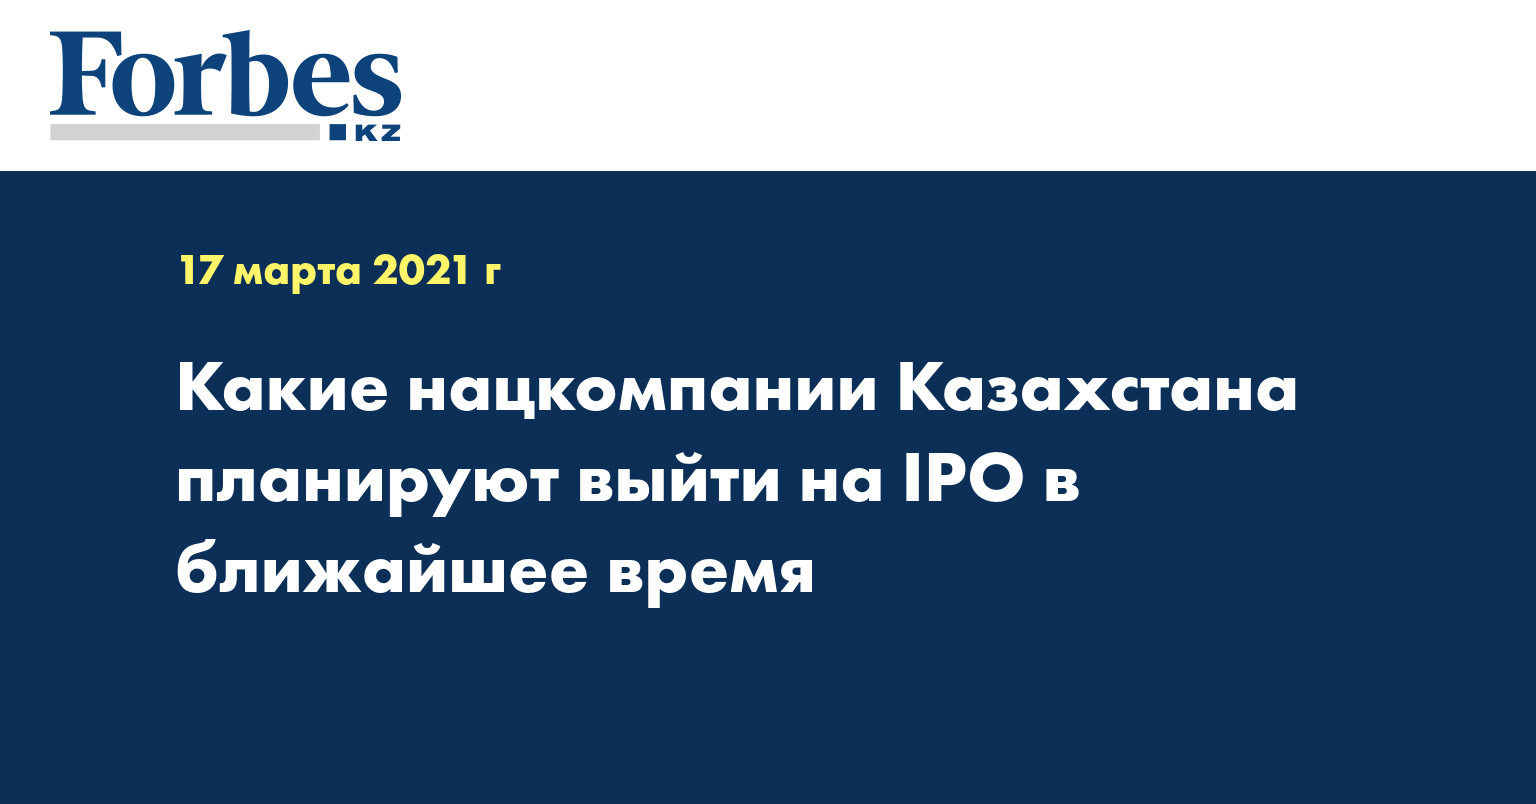  Какие нацкомпании Казахстана планируют выйти на IPO в ближайшее время